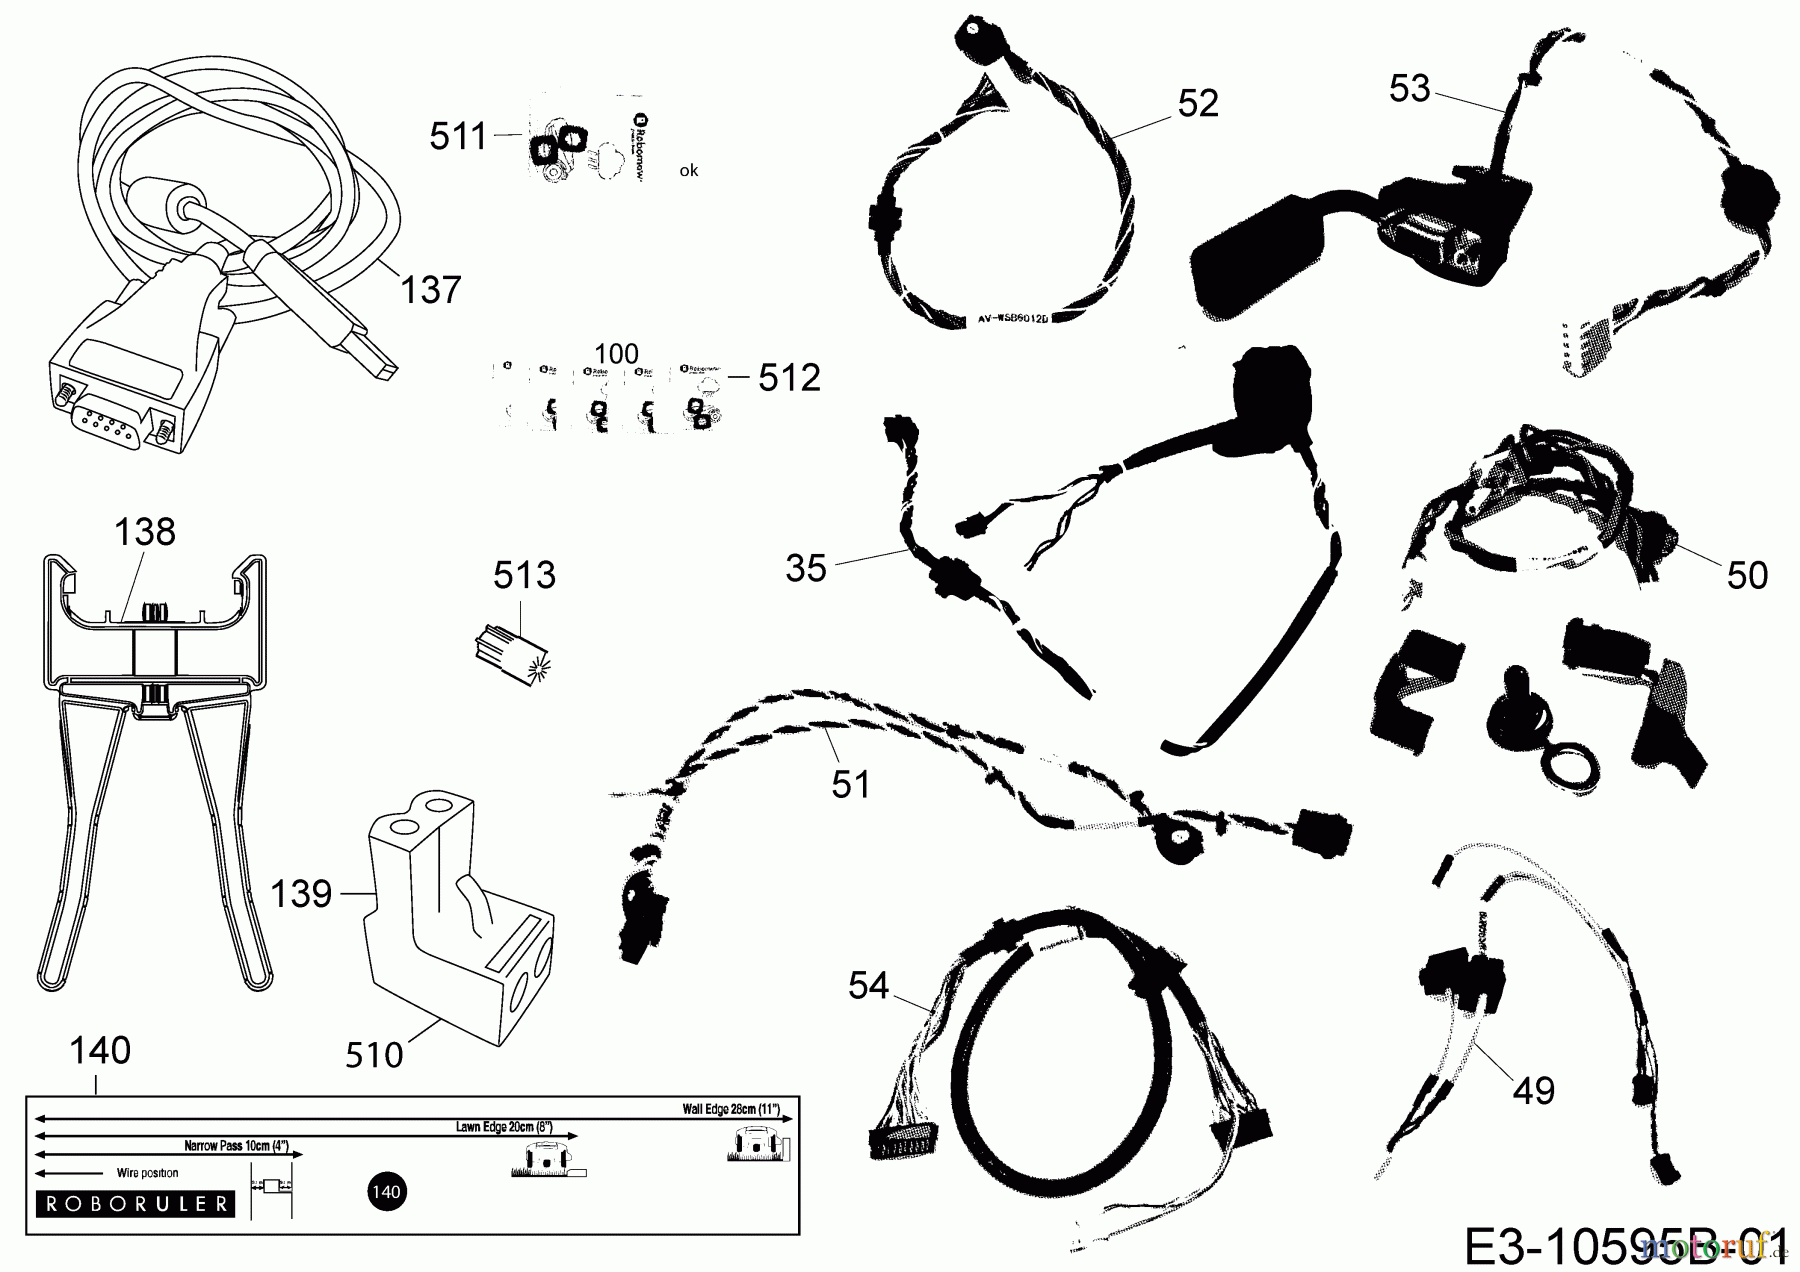  Robomow Mähroboter MS 1800 (White) PRD6200YW1  (2014) Kabel, Kabelanschluß, Regensensor, Werkzeug